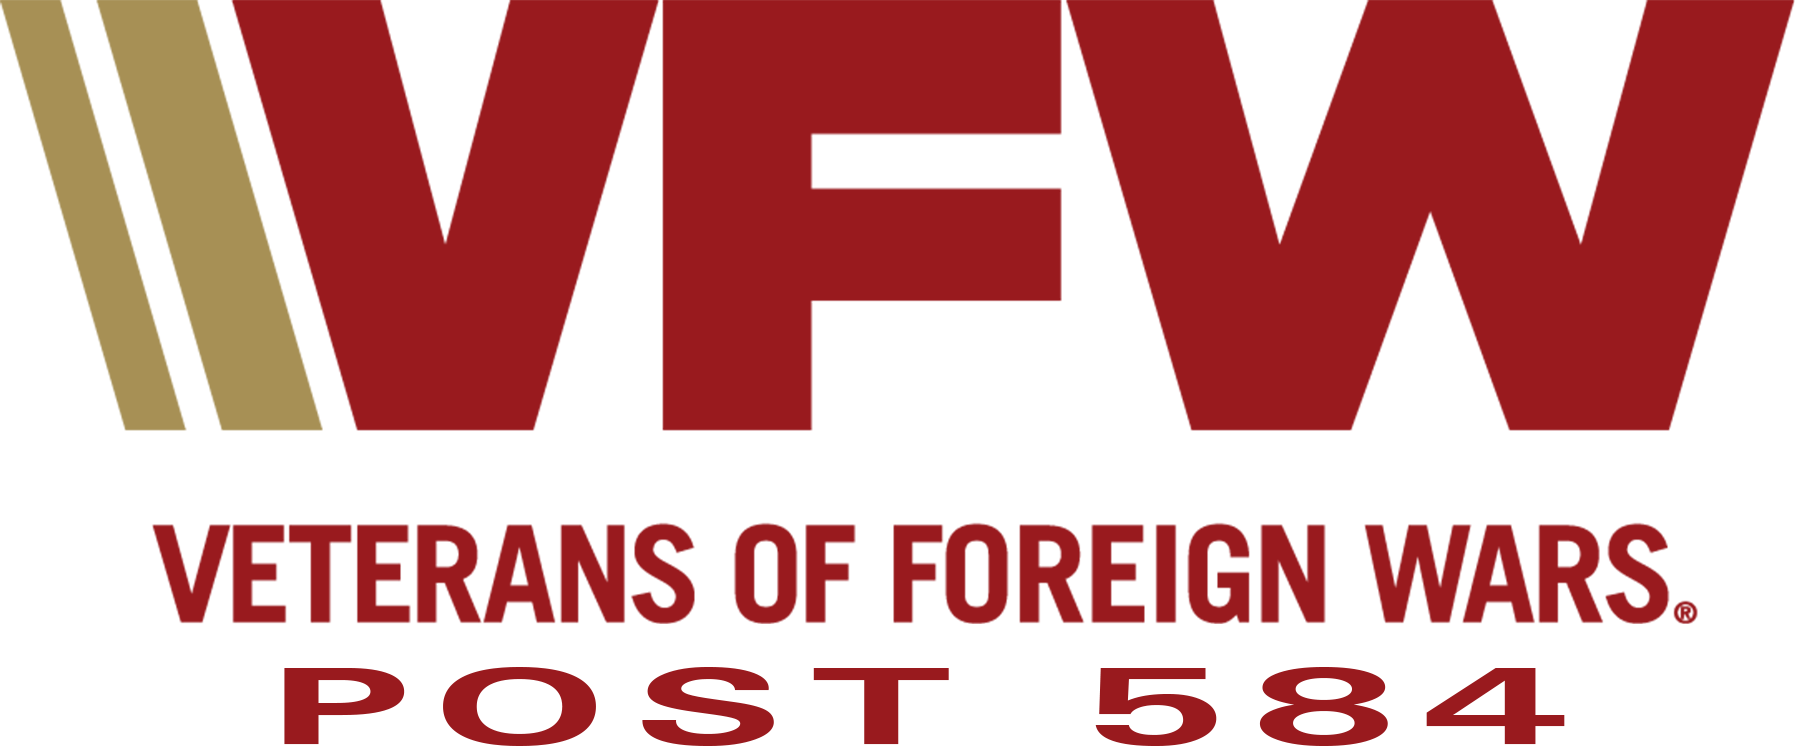 VFW Post 584